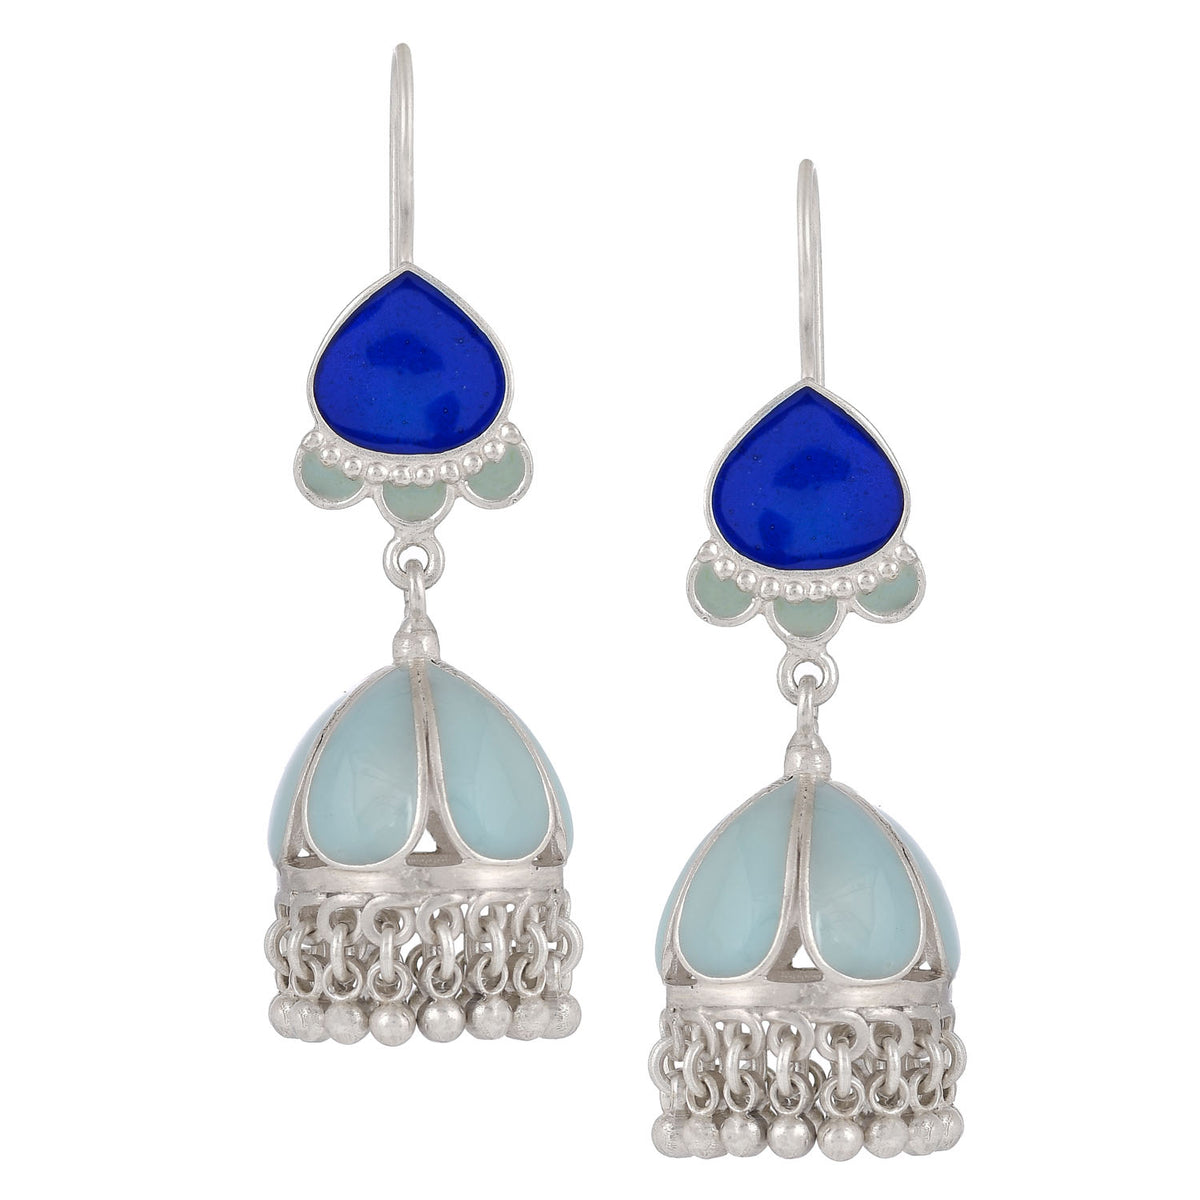 Buy Starry Sky Earrings Midnight Sparkle Deep Blue Earrings Online in India   Etsy